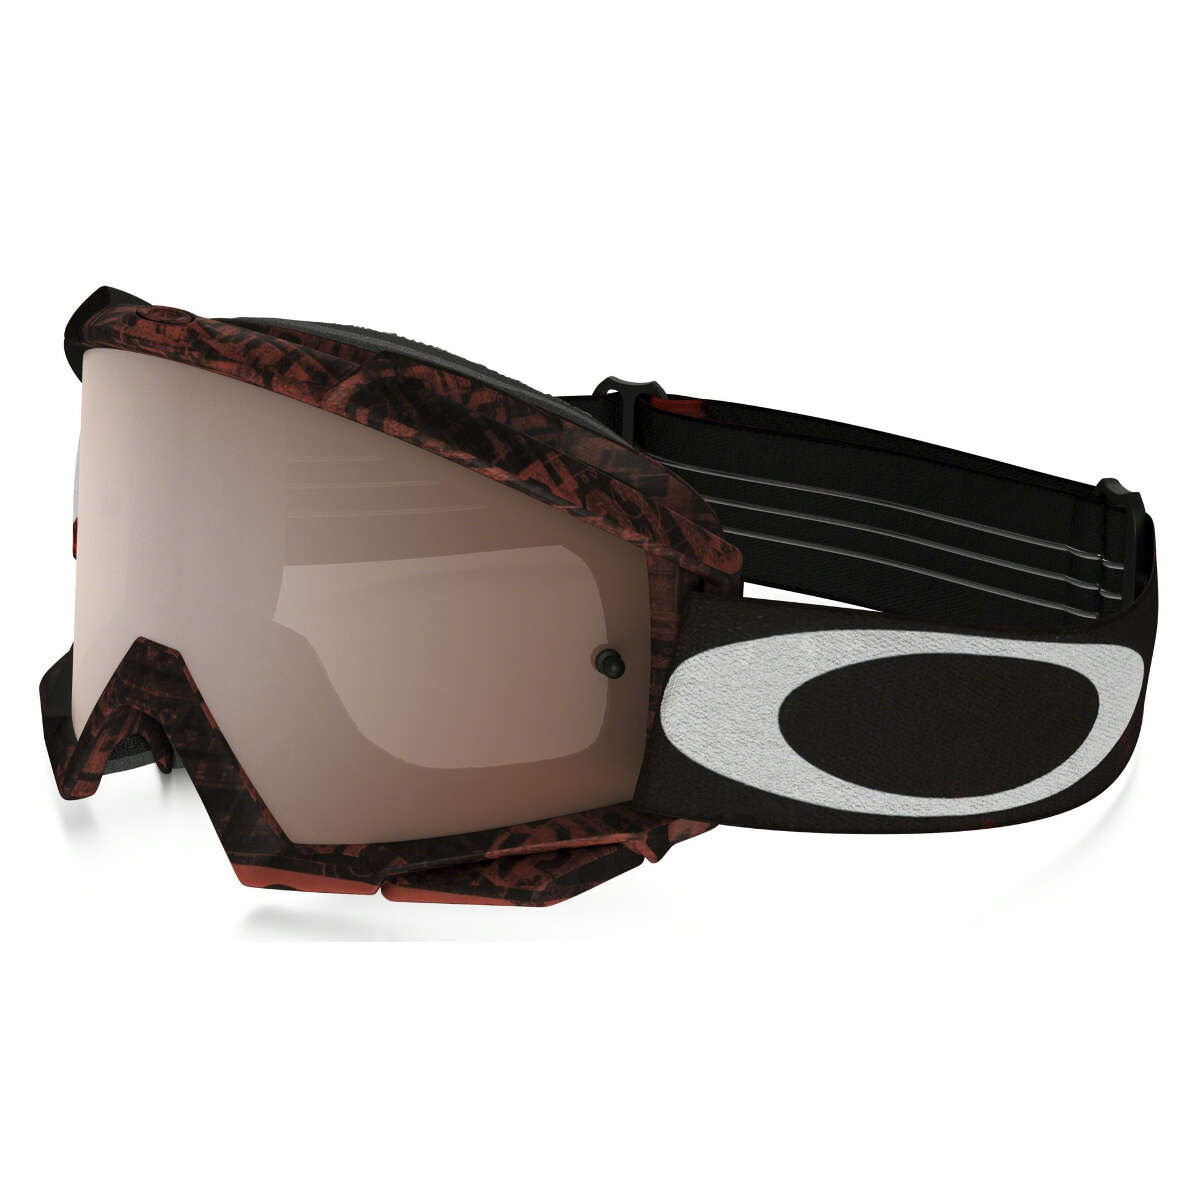 Oakley Goggle Proven MX Distress Tagline Red/Black - Black Iridium/Clear Anti-Fog